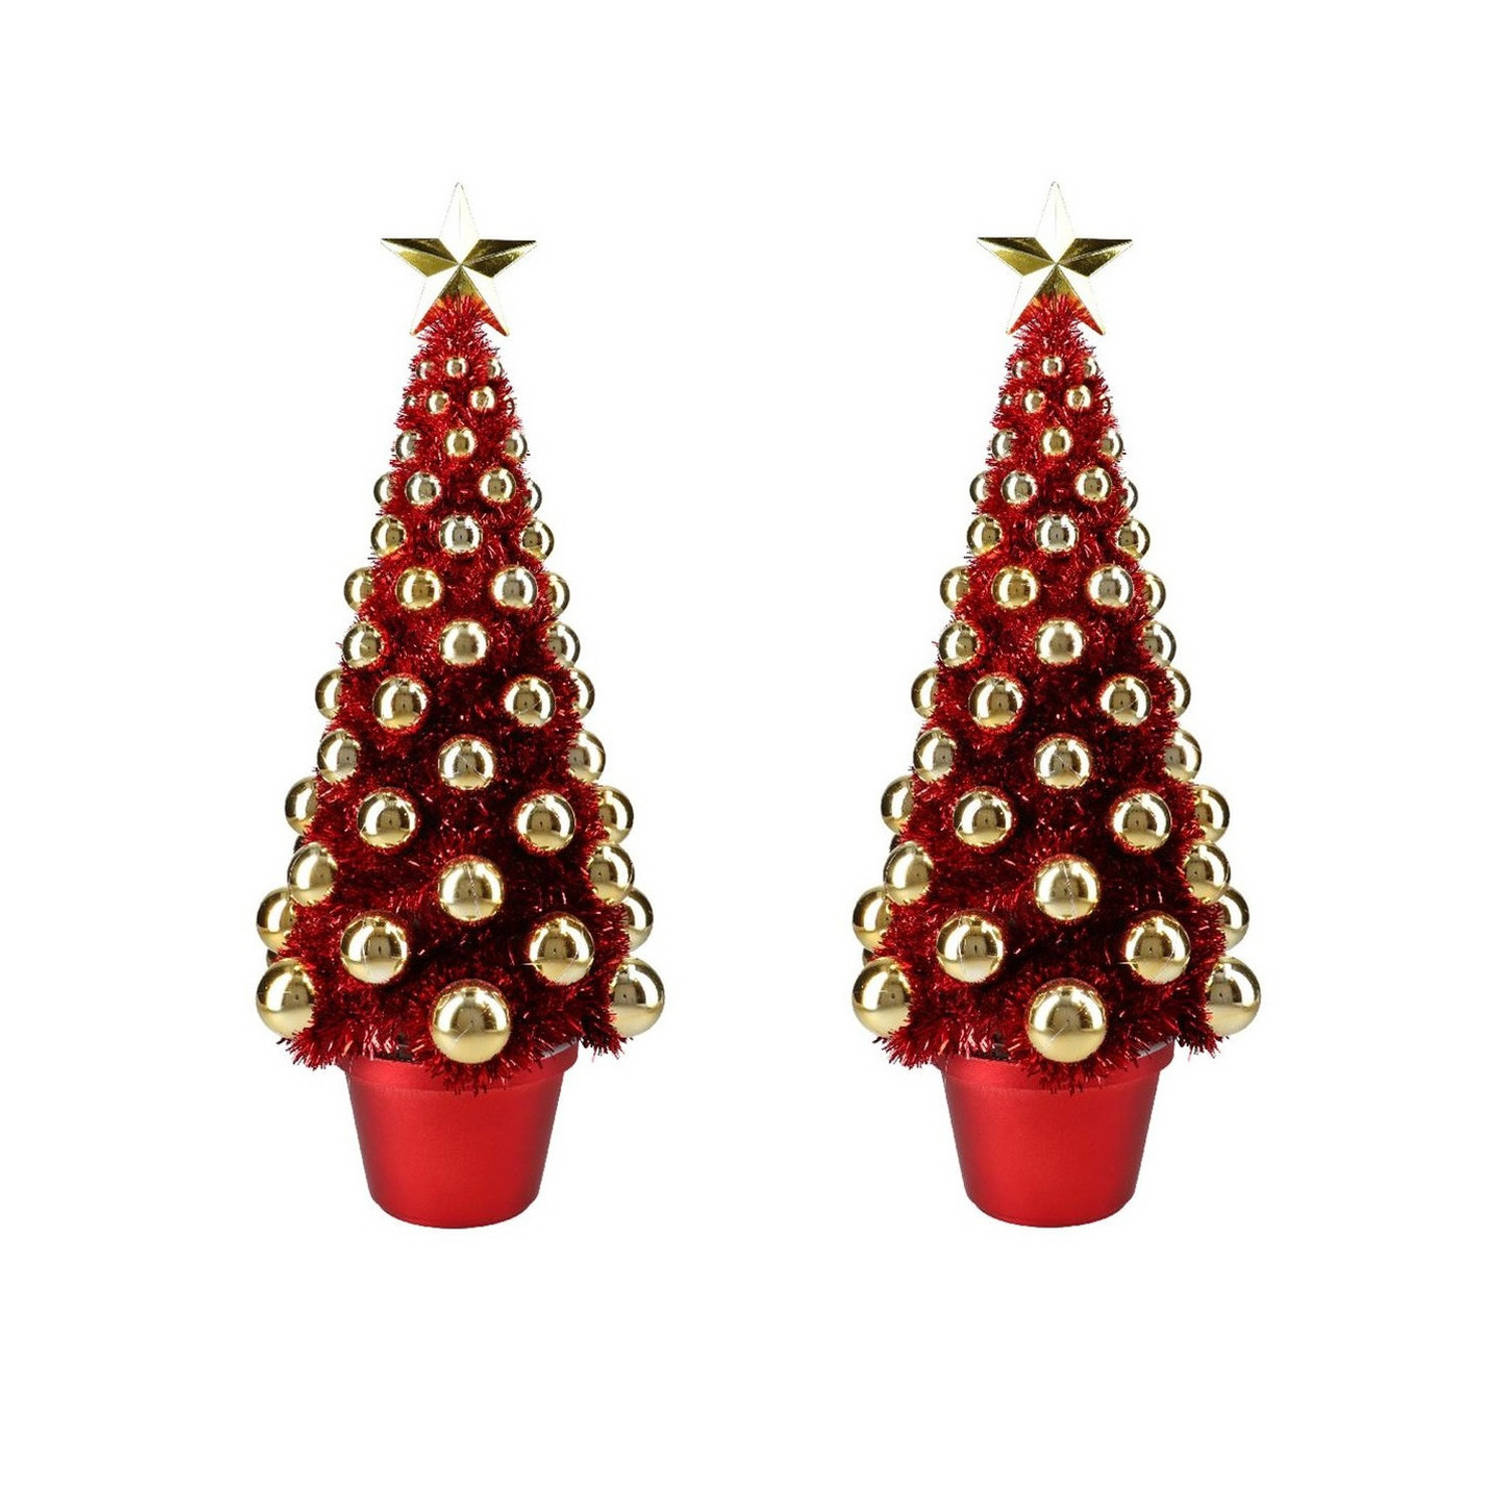 2x Stuks Complete Mini Kunst Kerstboompje-kunstboompje Rood-goud Met Kerstballen 50 Cm Kunstkerstboo